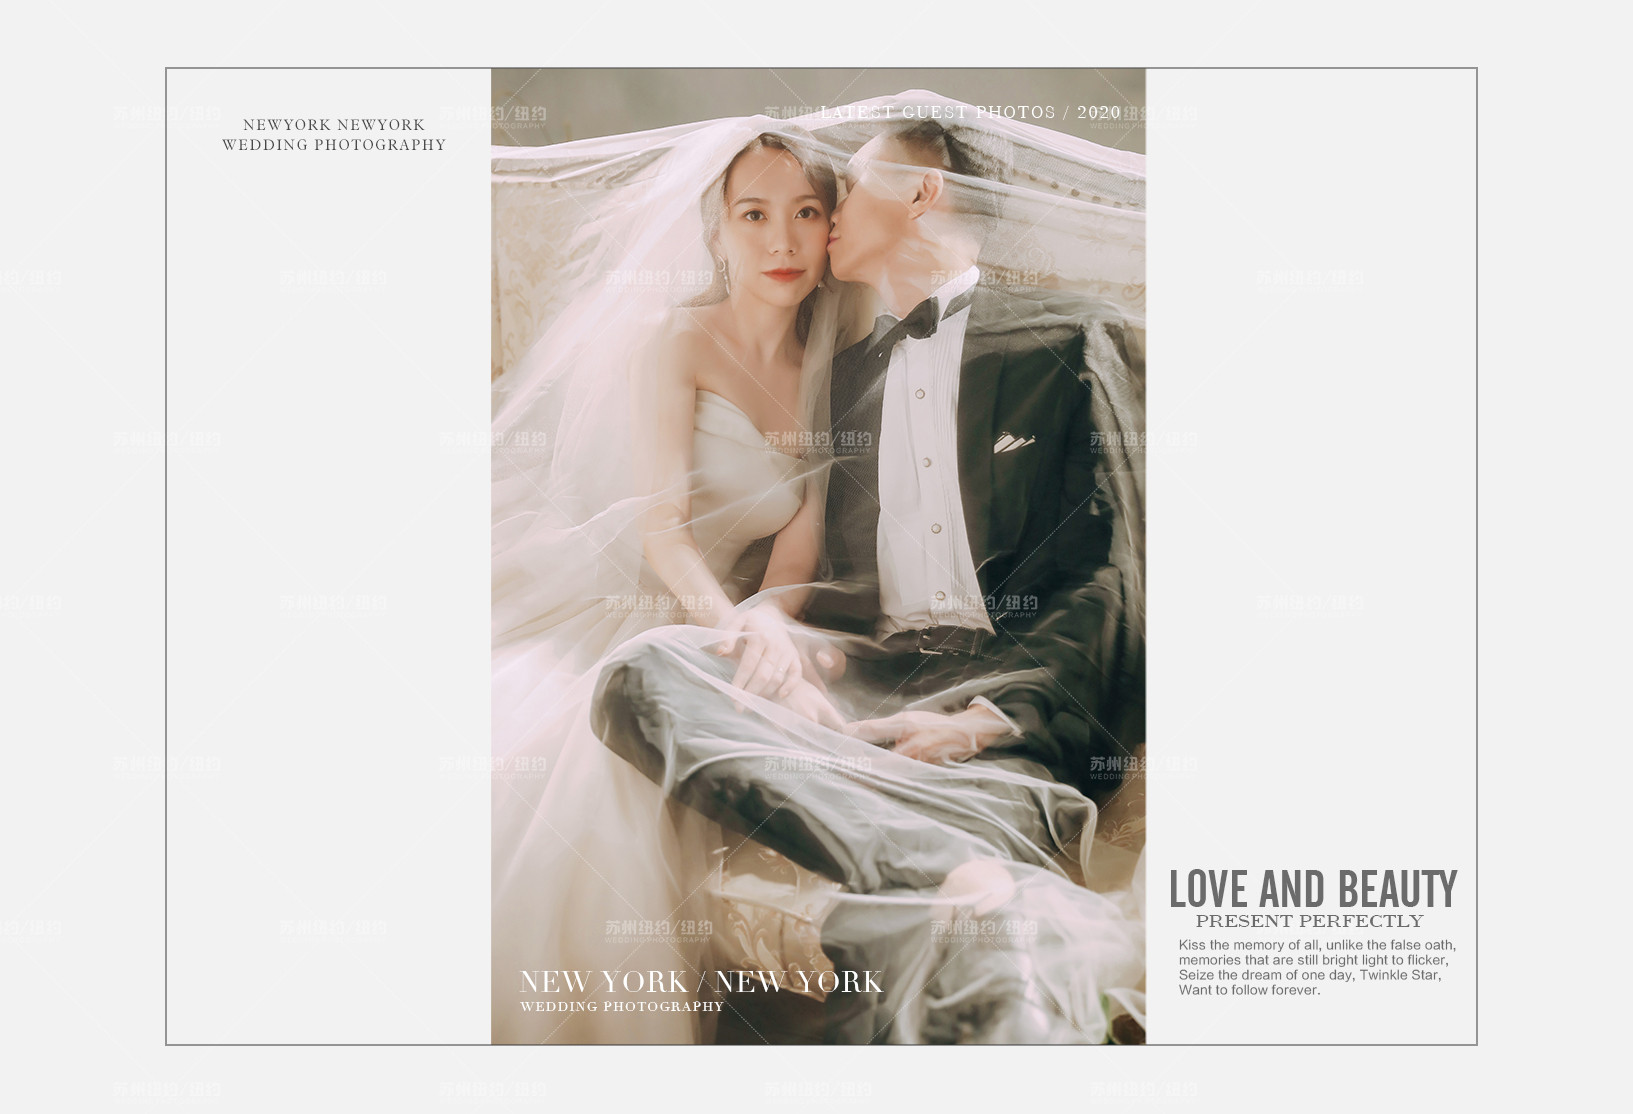 Mr.王 & Ms.臧（纽约纽约最新客照）婚纱摄影照